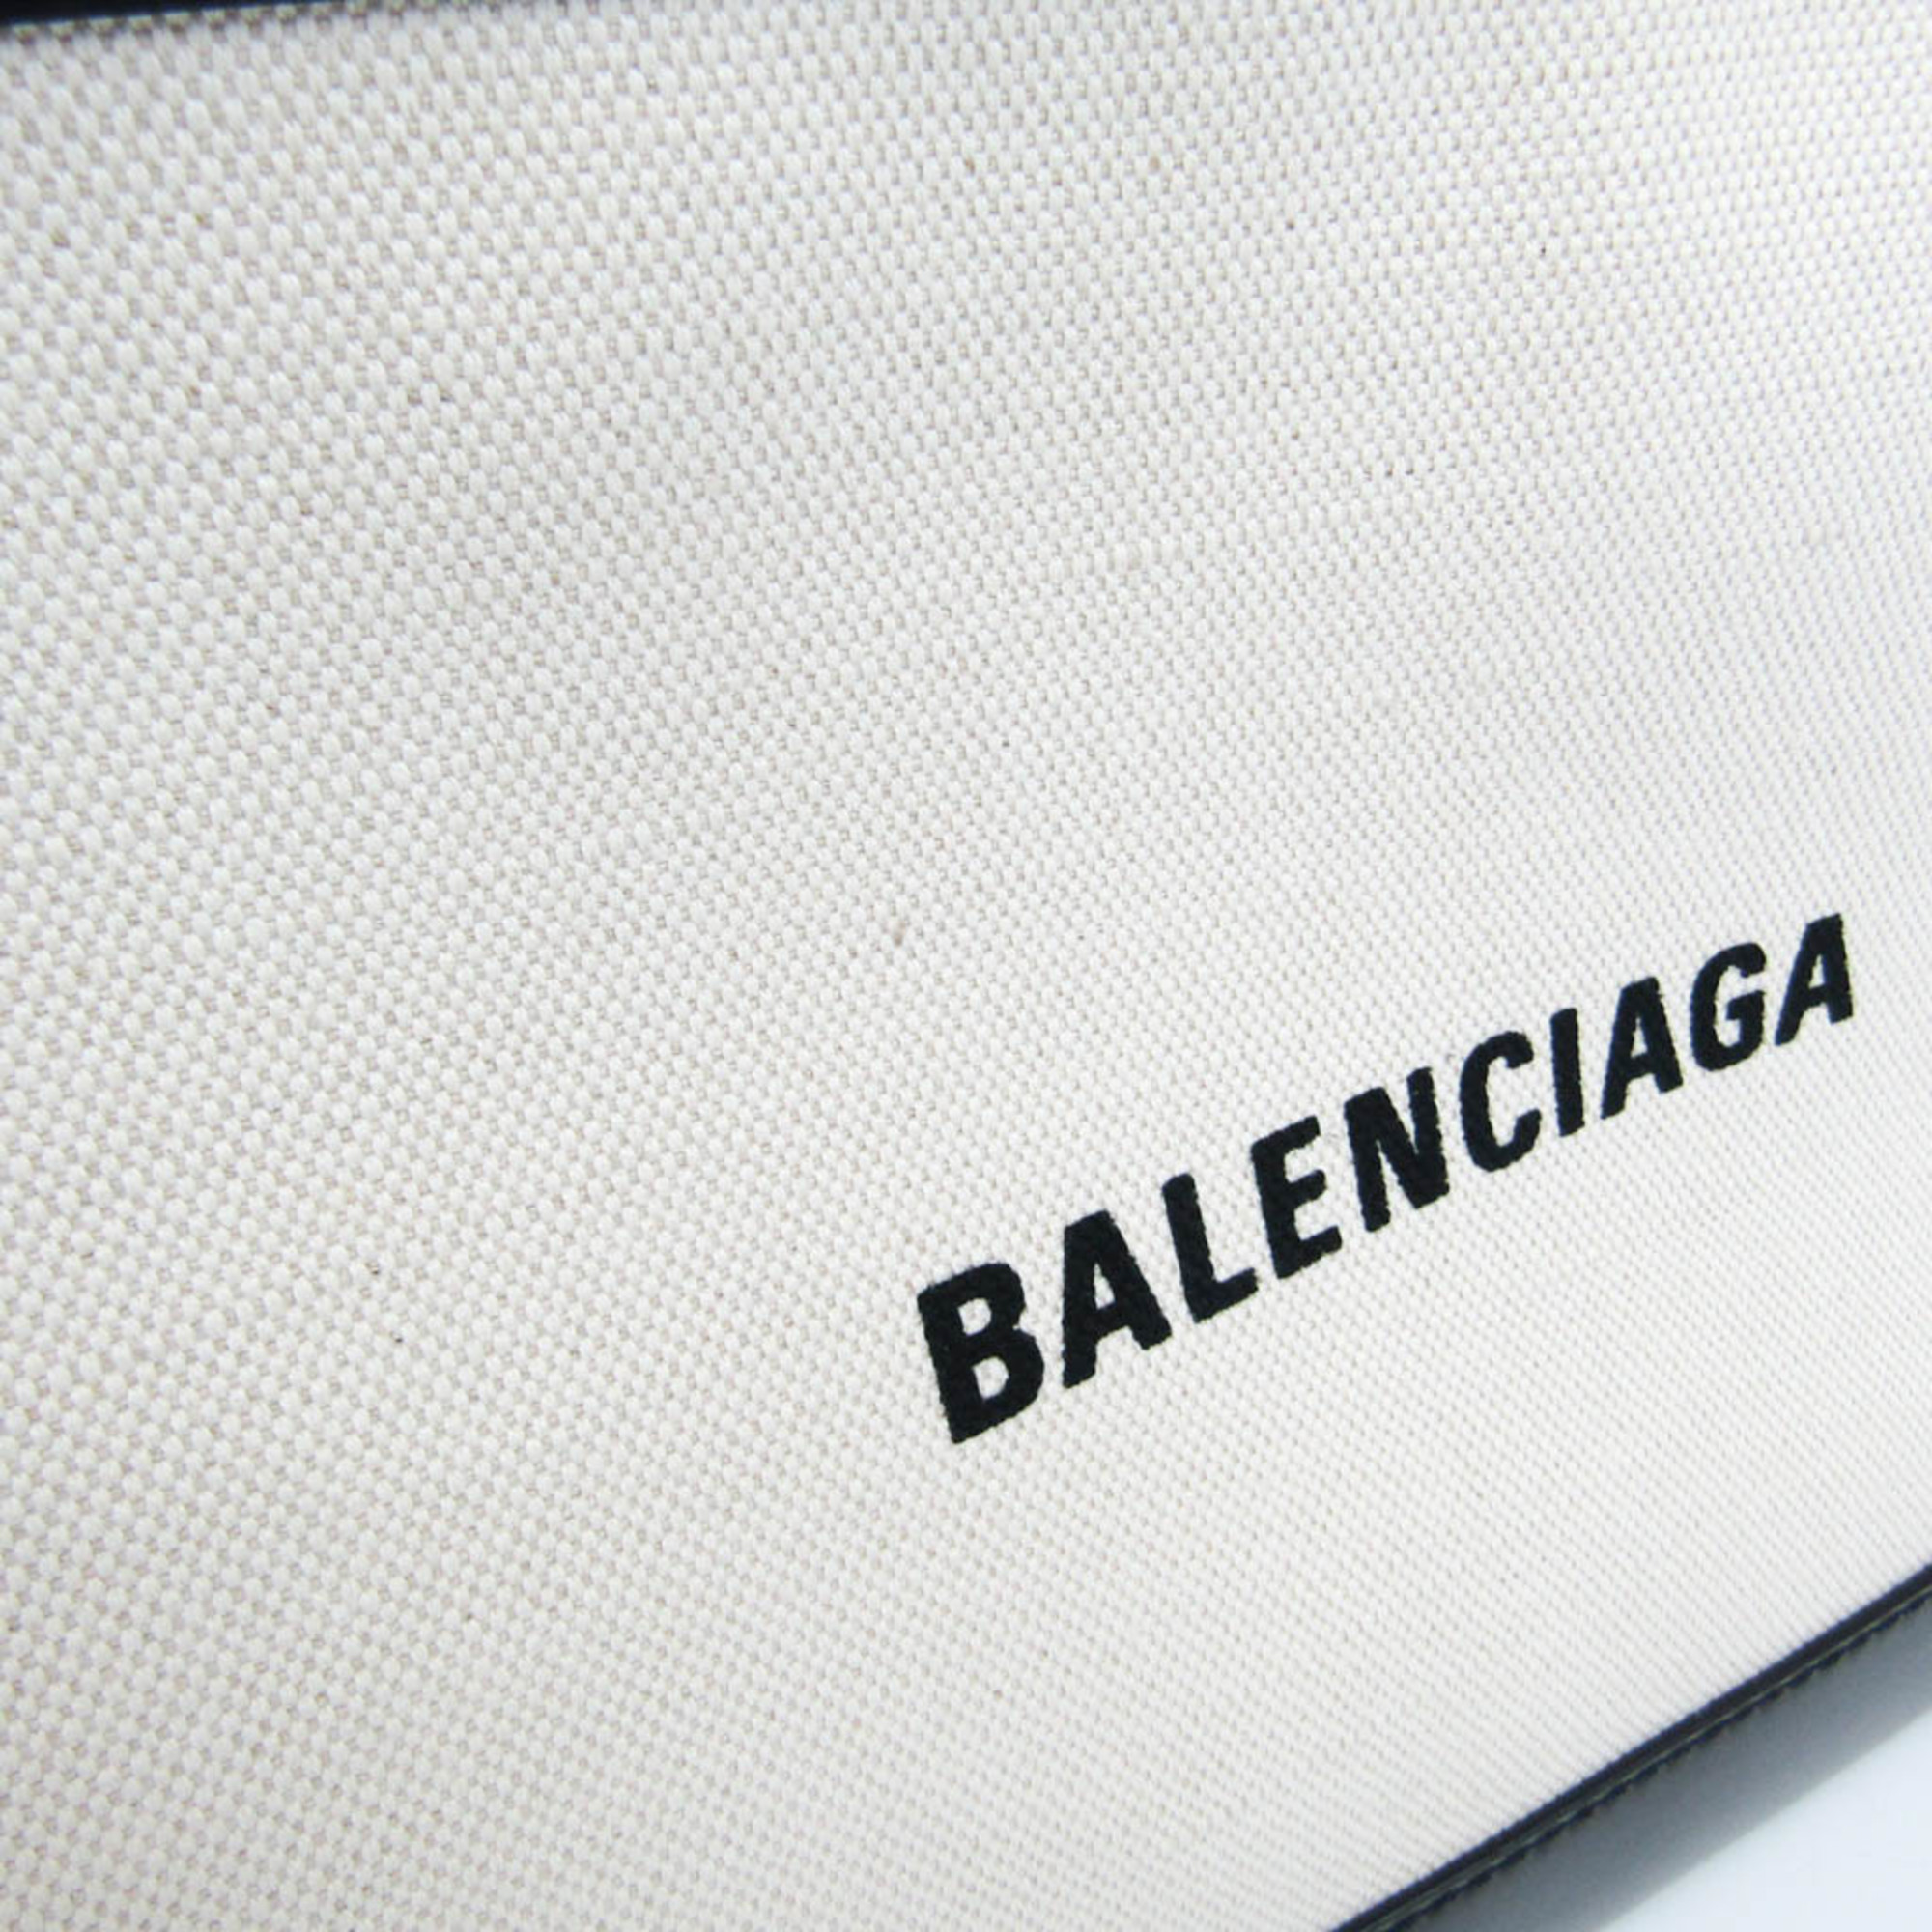 バレンシアガ(Balenciaga) ネイビークリップM 373834 レディース,メンズ キャンバス,レザー クラッチバッグ ブラック,オフホワイト